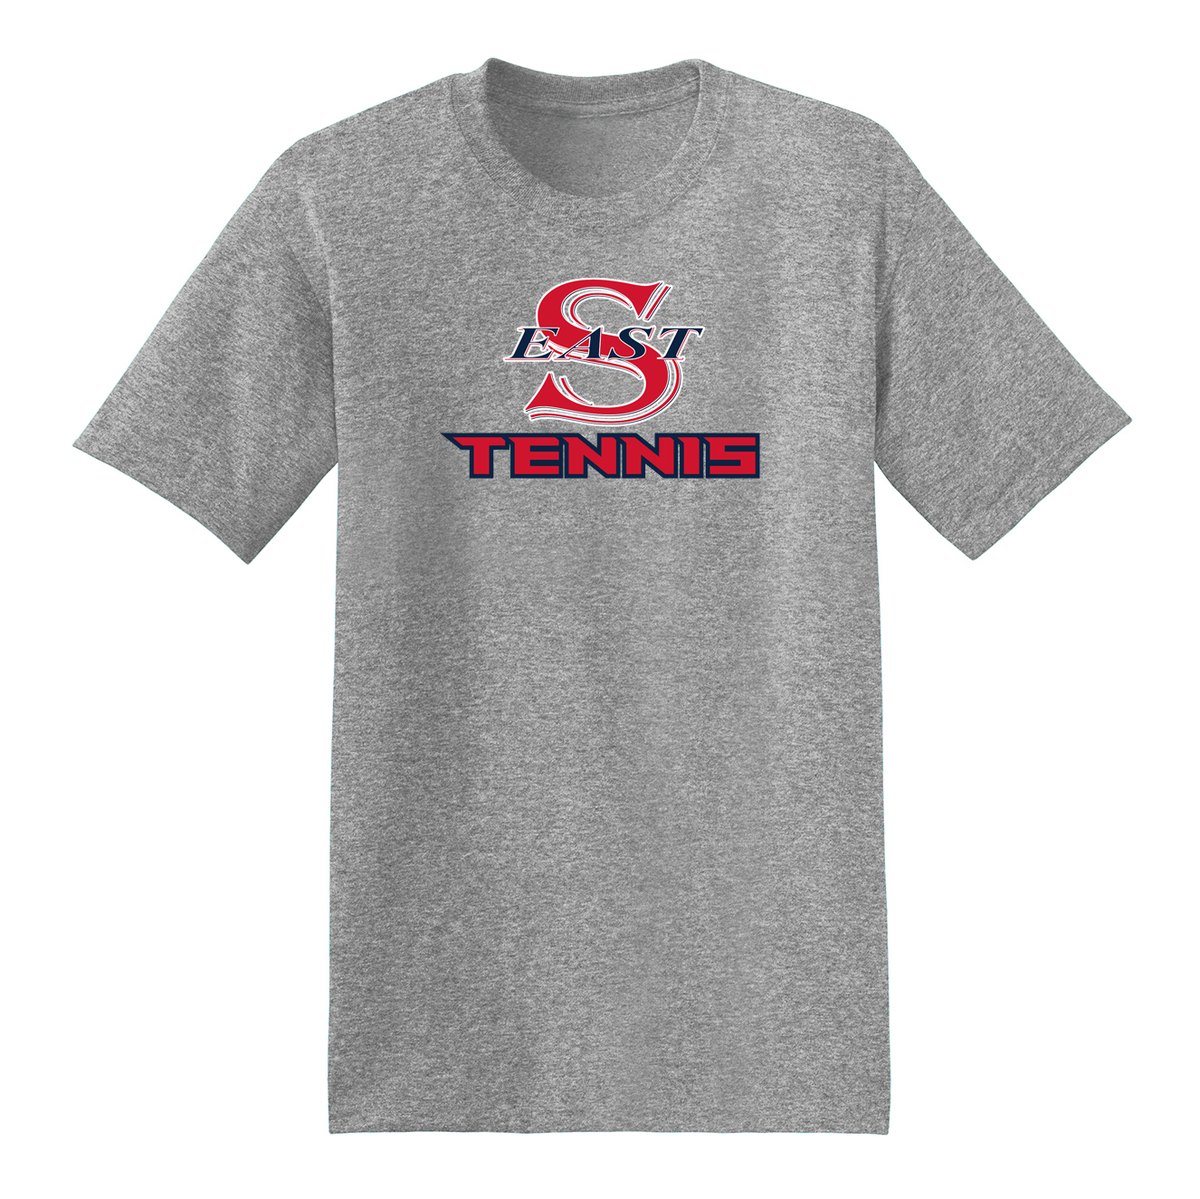 Smithtown East Tennis T-Shirt